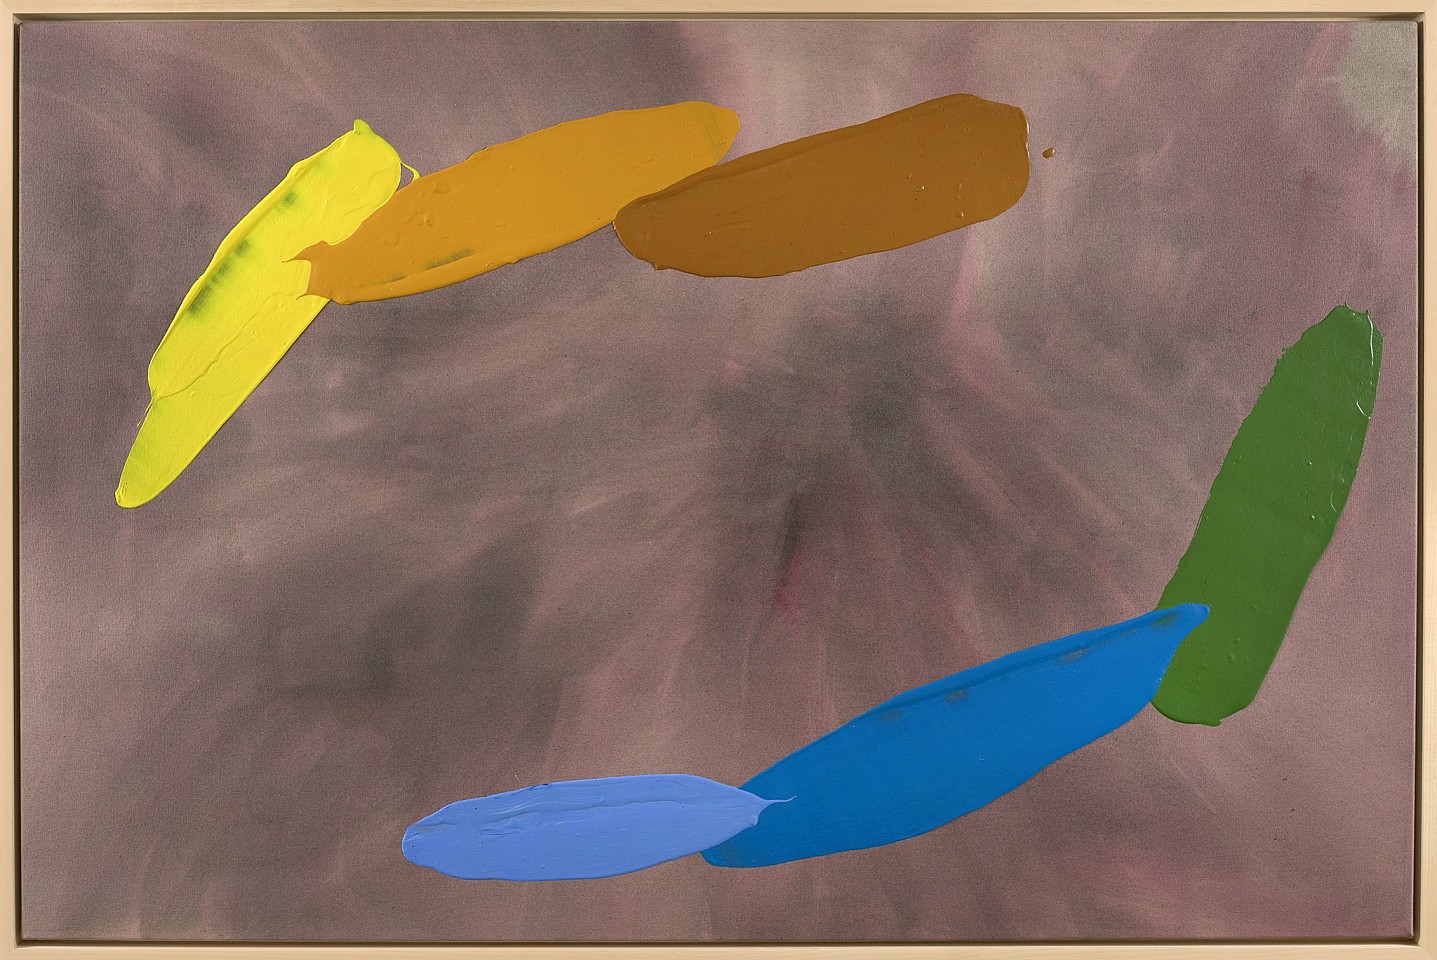 William Perehudoff, AC-84-067, 1984
Acrylic on canvas, 42 1/4 x 64 1/4 in. (107.3 x 163.2 cm)
PER-00096